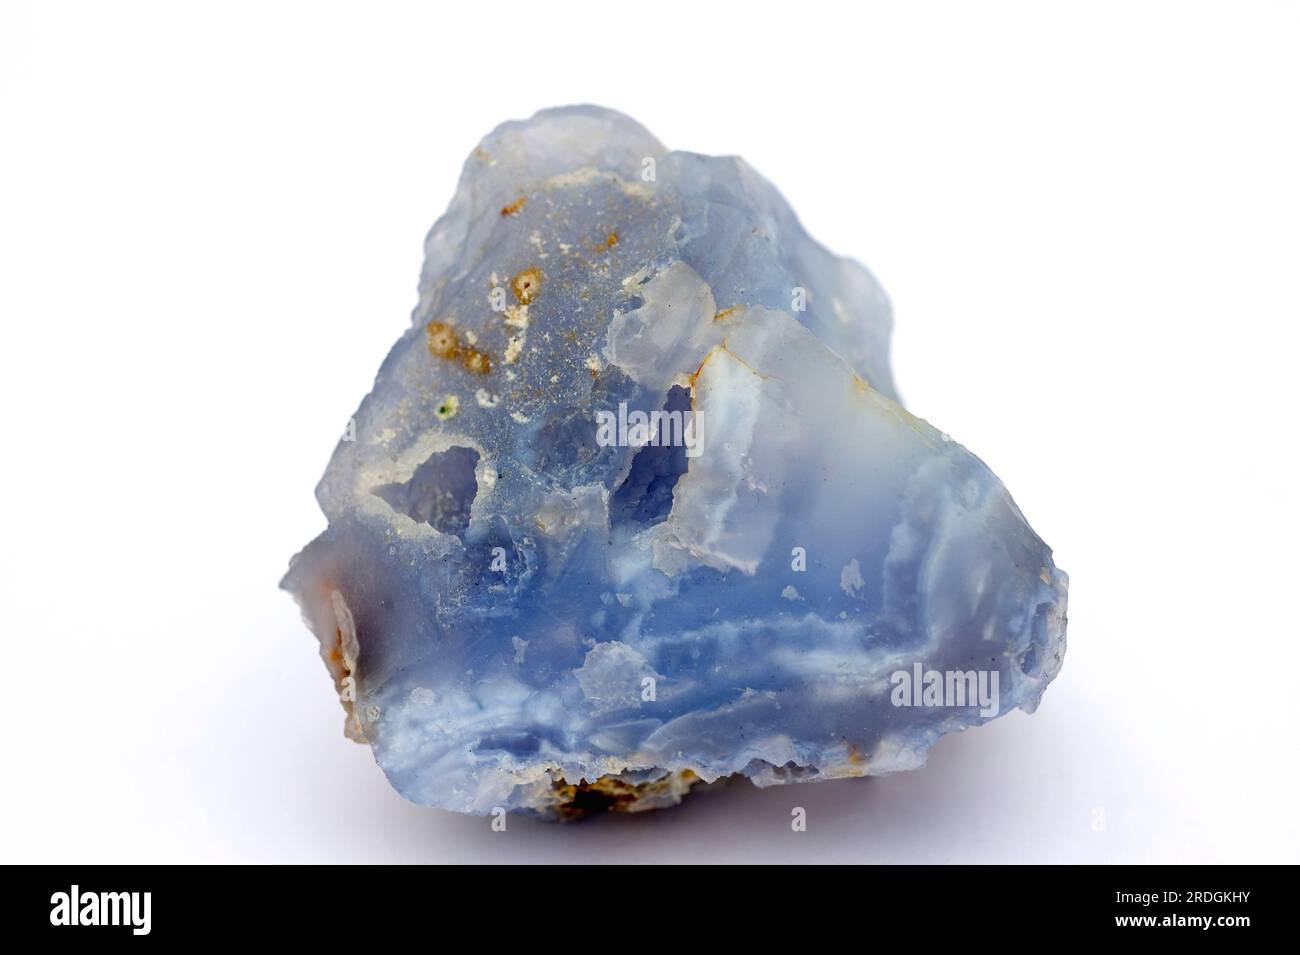 La calcedonia blu è una varietà criptocristallina di silice composta da due minerali, quarzo e moganite (diossido di silicio). Questo campione viene da Malaw Foto Stock